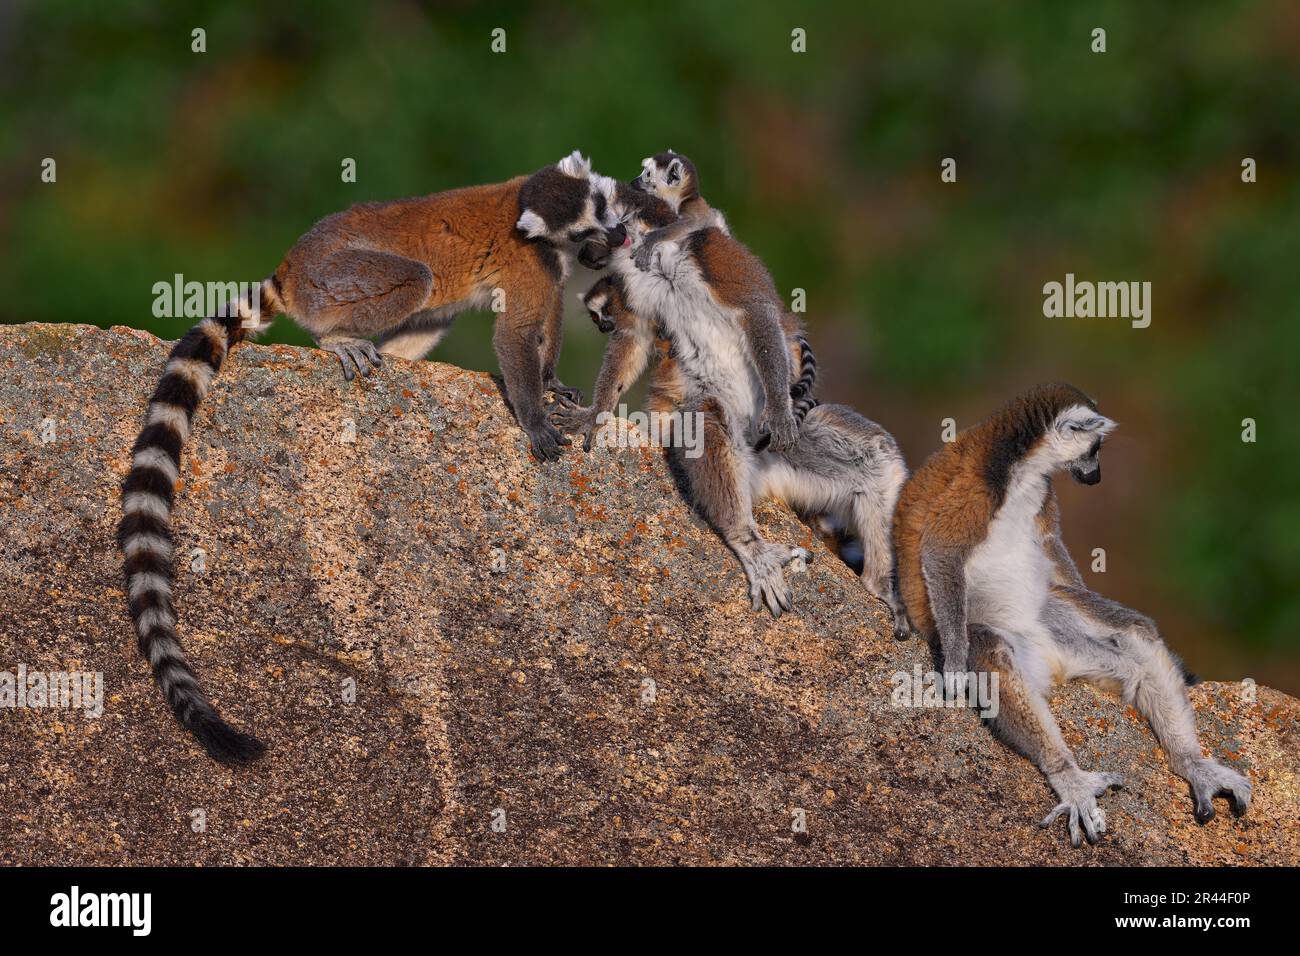 Madagascar fauna selvatica, famiglia lemur. Lemur con coda ad anello, famiglia Lemur catta, cucciolo sul retro. Animale da Madagascar, Africa, occhi arancioni. Luce serale Foto Stock